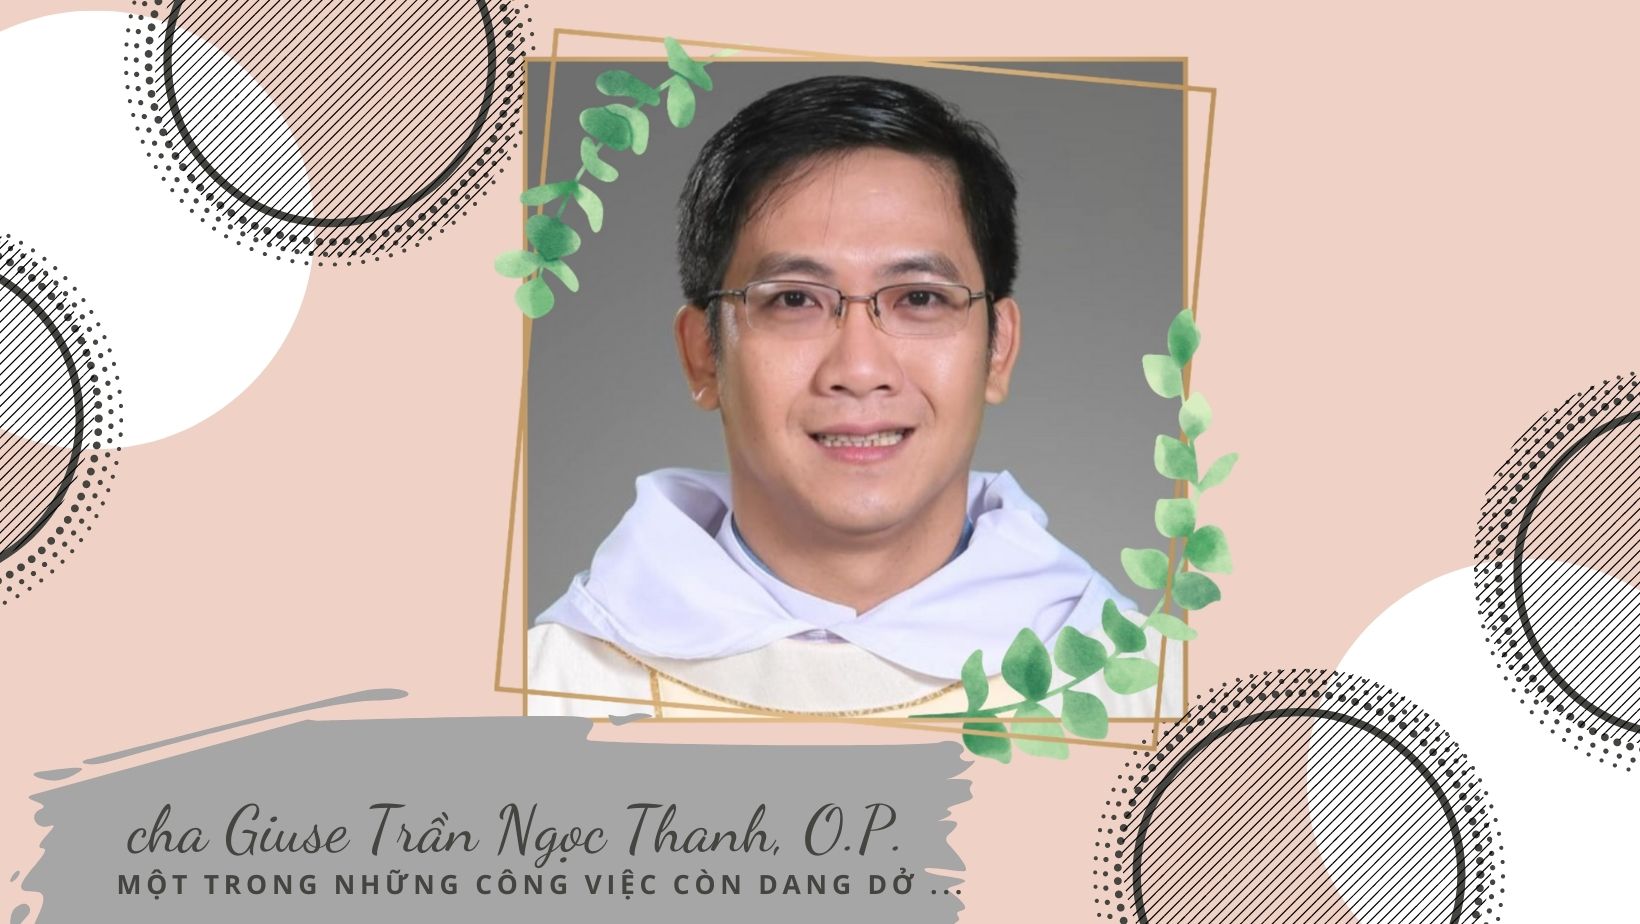 Một trong những công việc còn dang dở của người anh em chung linh đạo - Cha Giuse Trần Ngọc Thanh, O.P.